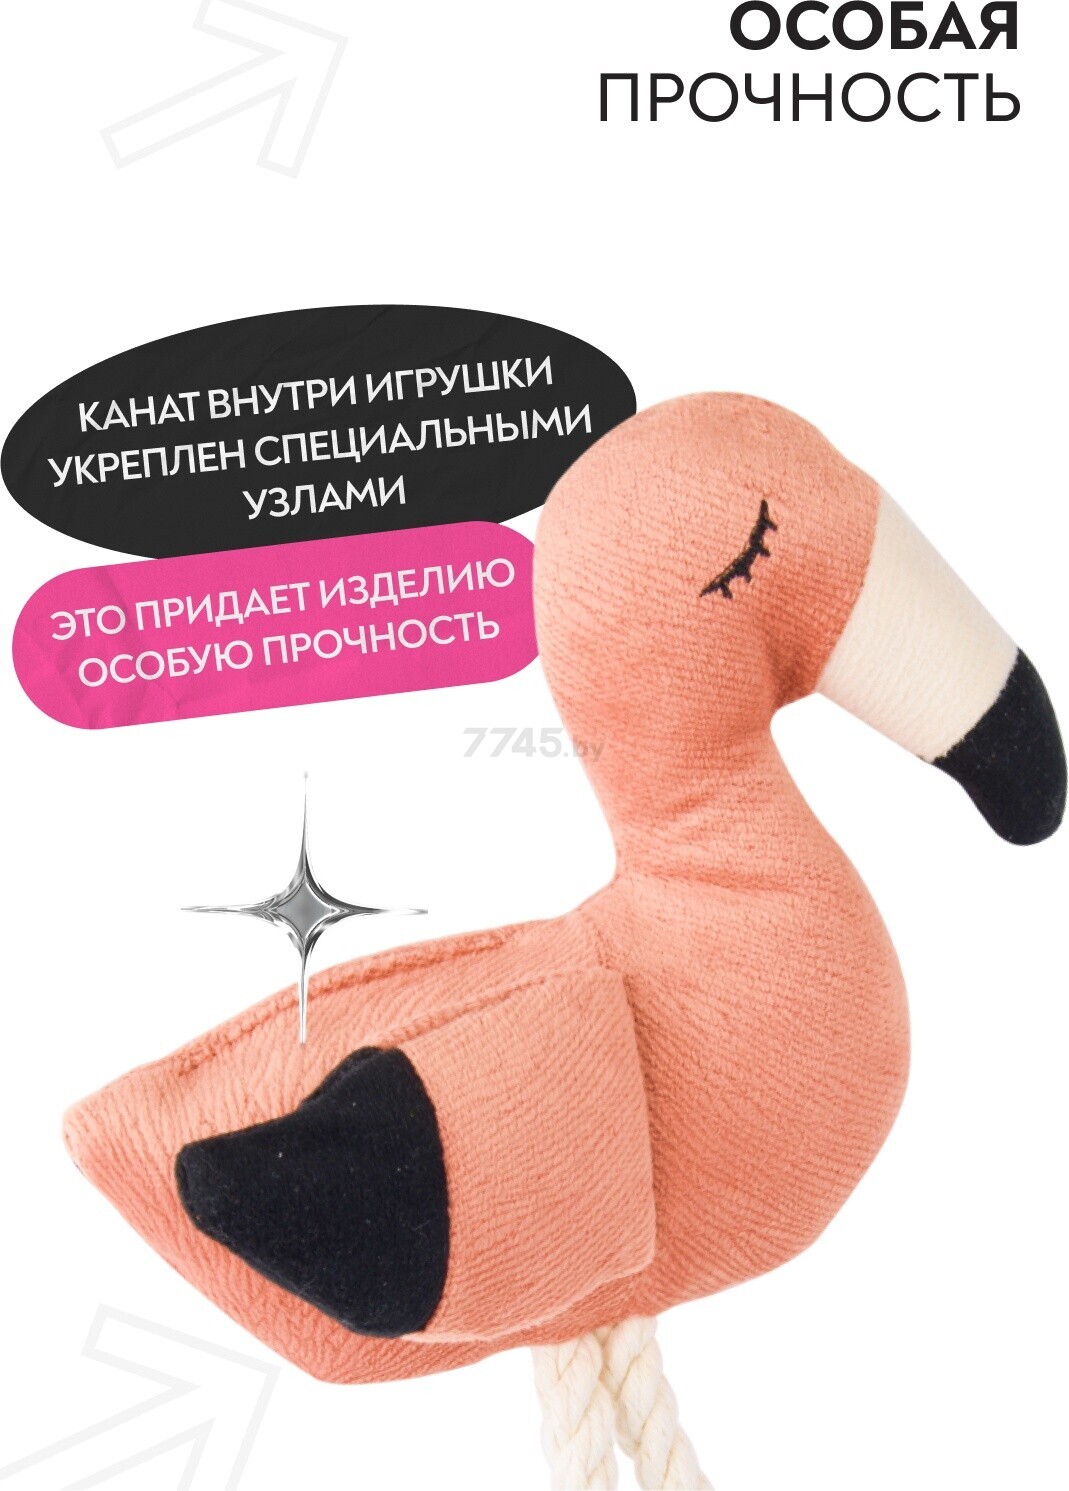 Игрушка для собак MR.KRANCH Фламинго с канатом и пищалкой 24х13,5х6 см персиковый (MKR80262) - Фото 6